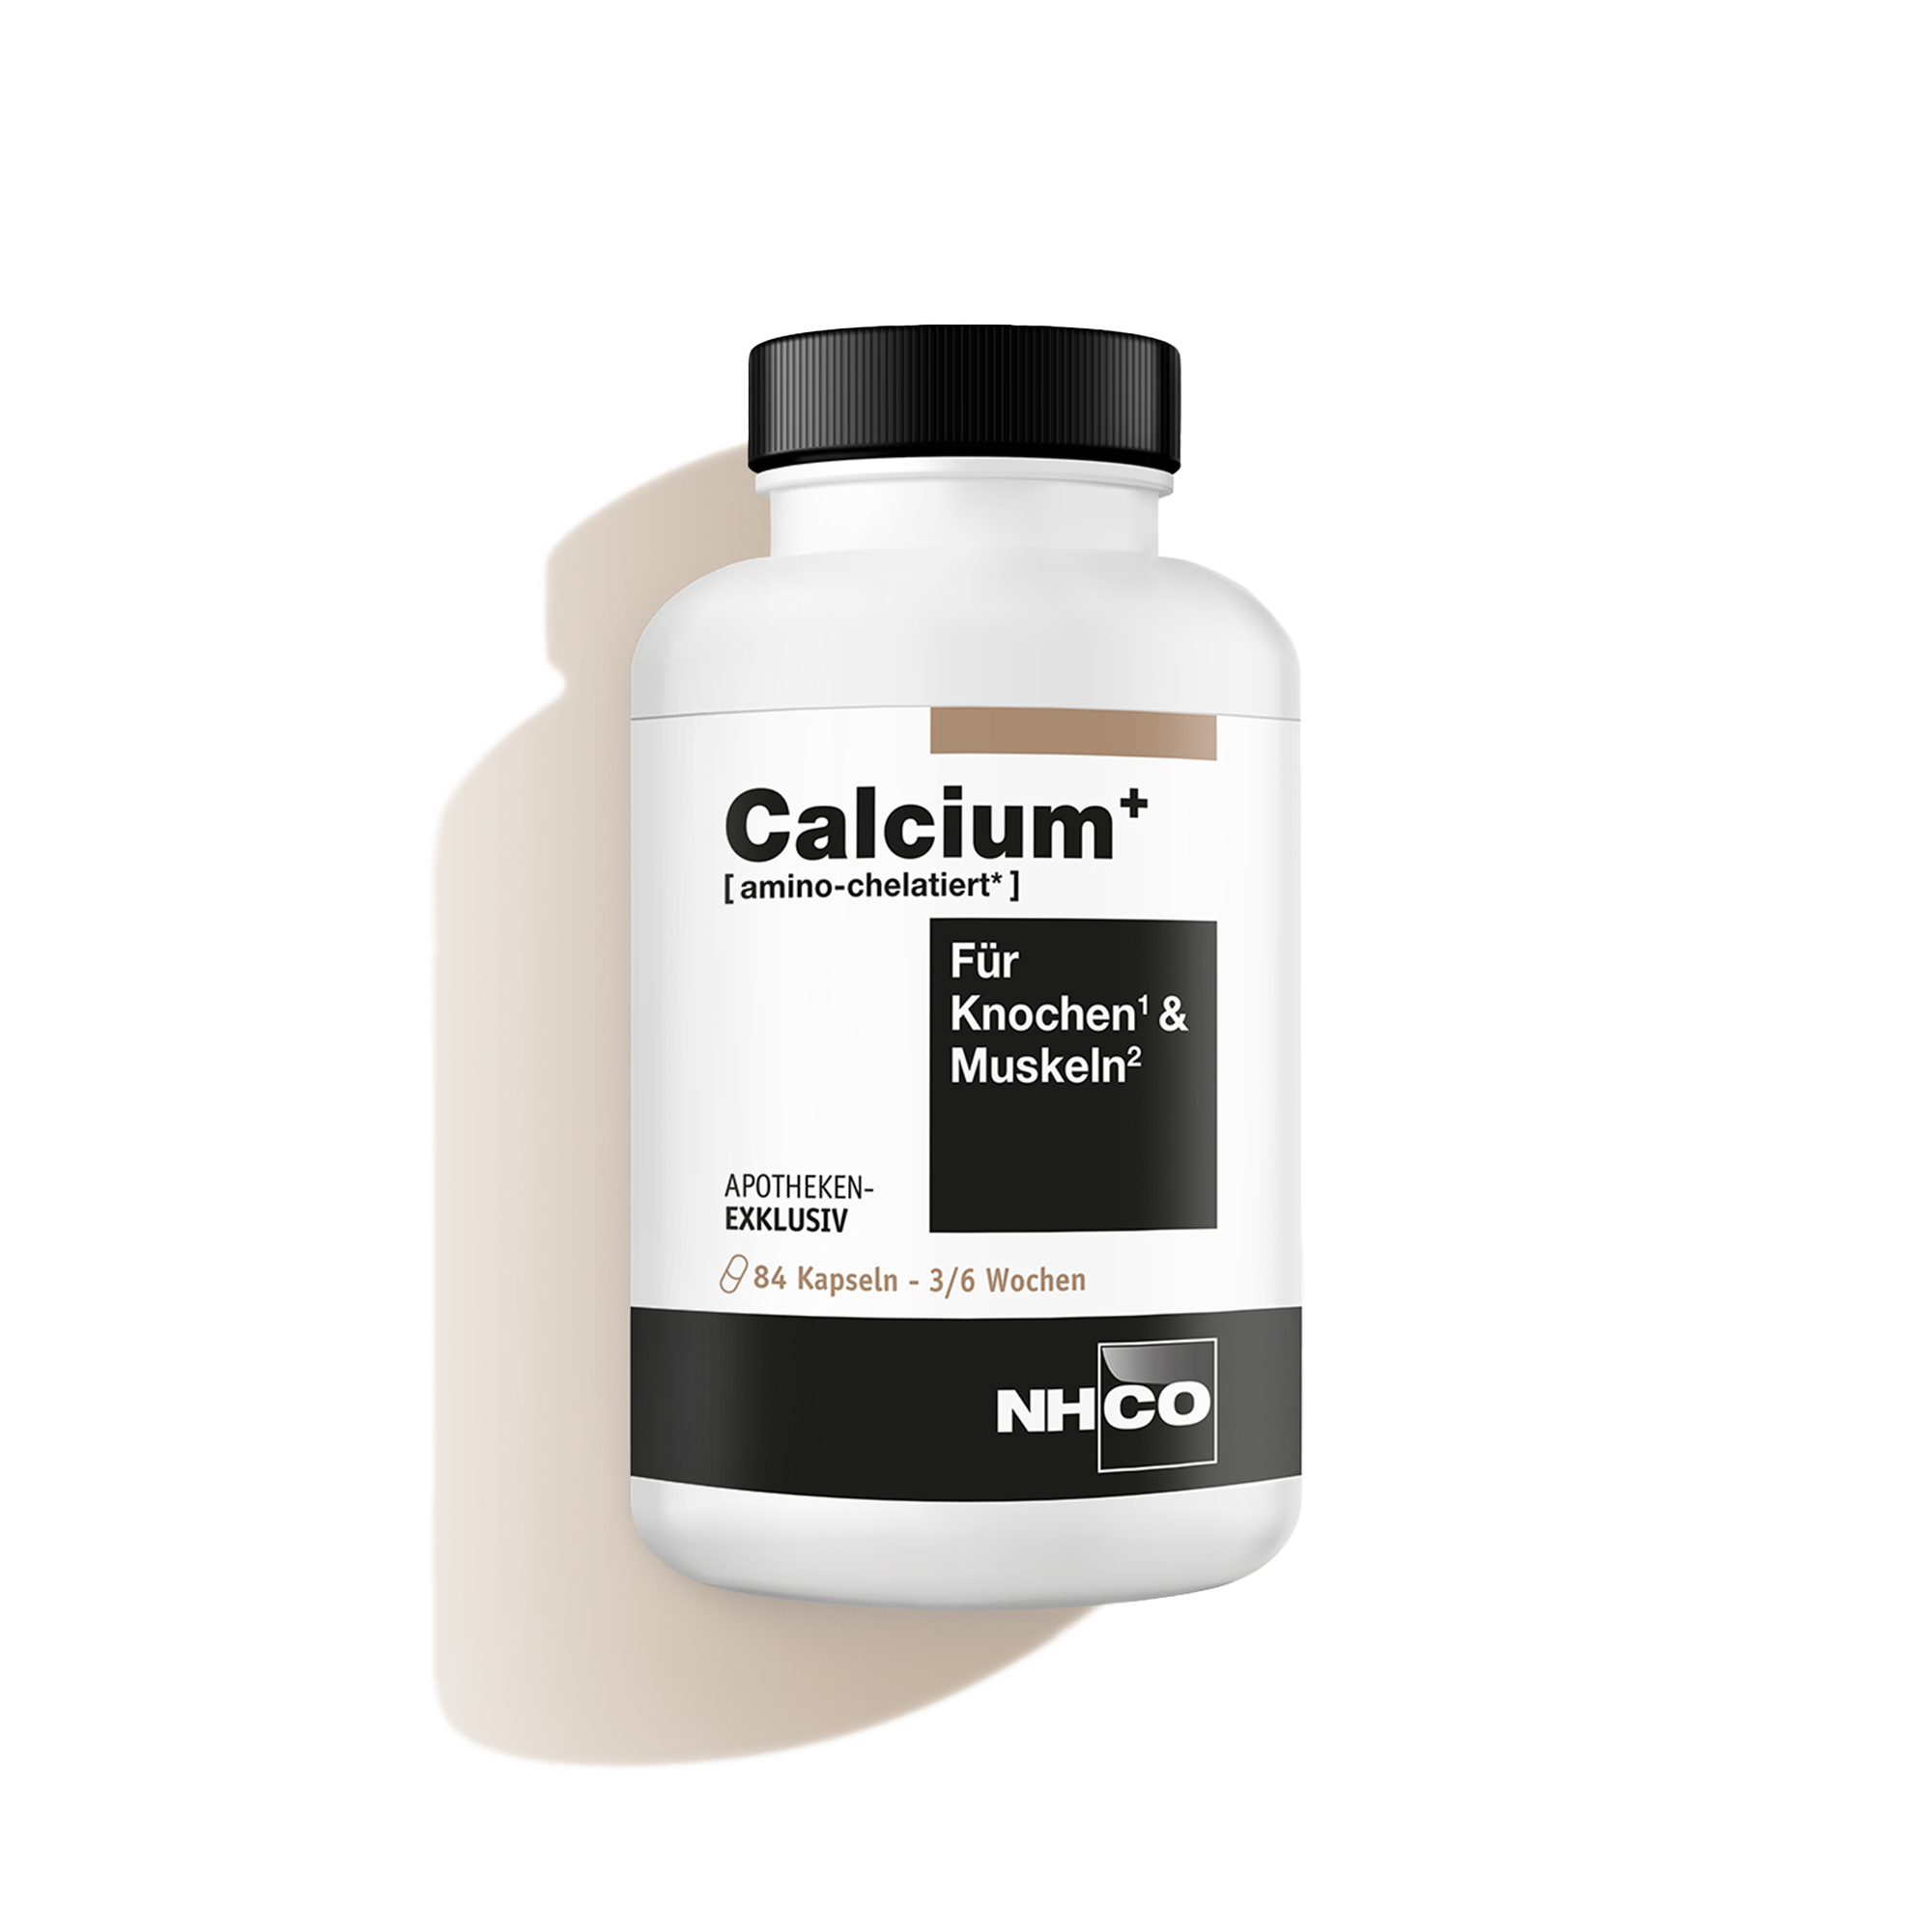 Nahrungsergänzungsmittel Calcium+ von NHCO Nutrition für Knochen und Muskeln.